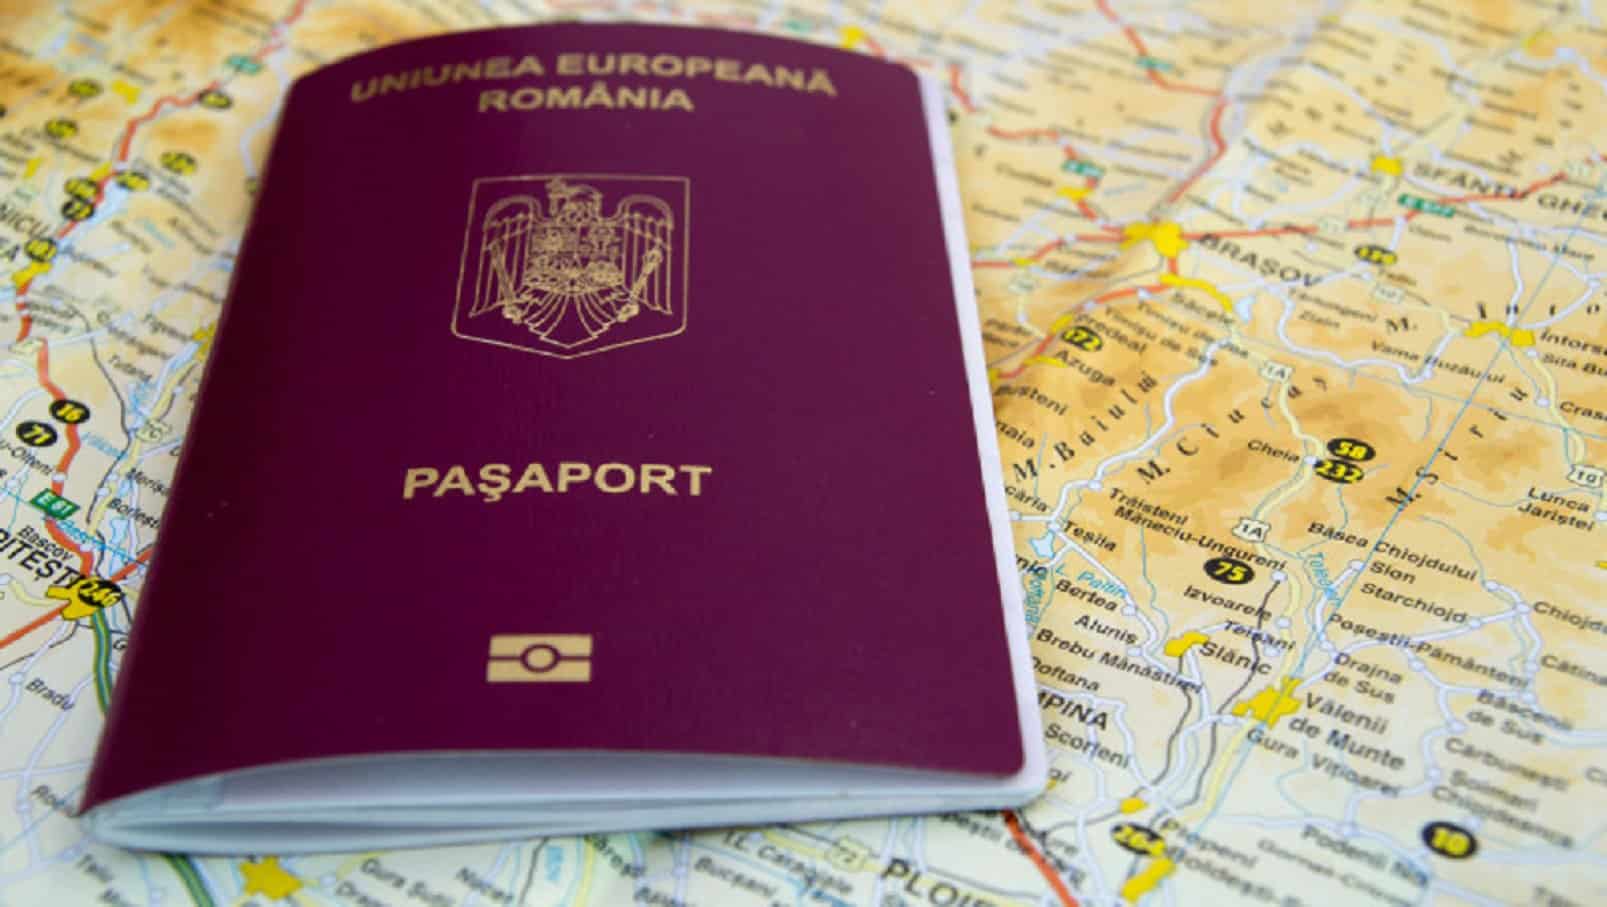 anunțul zilei pentru românii care vor să își facă pașaport.